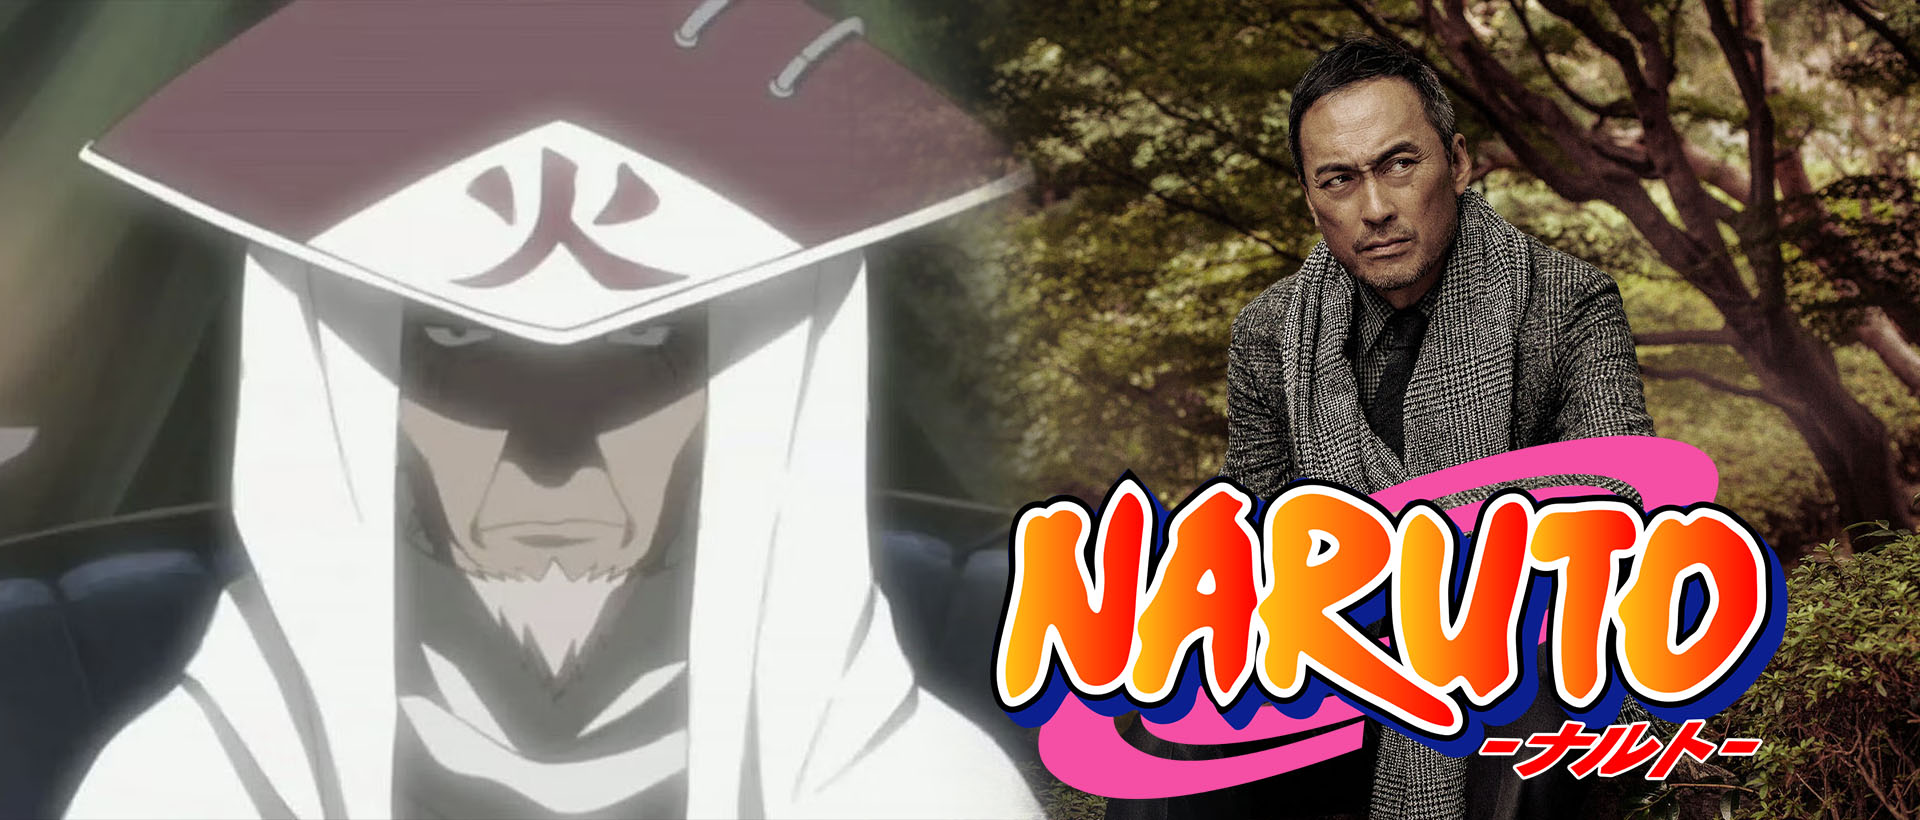 Naruto' deve chegar em breve à HBO Max